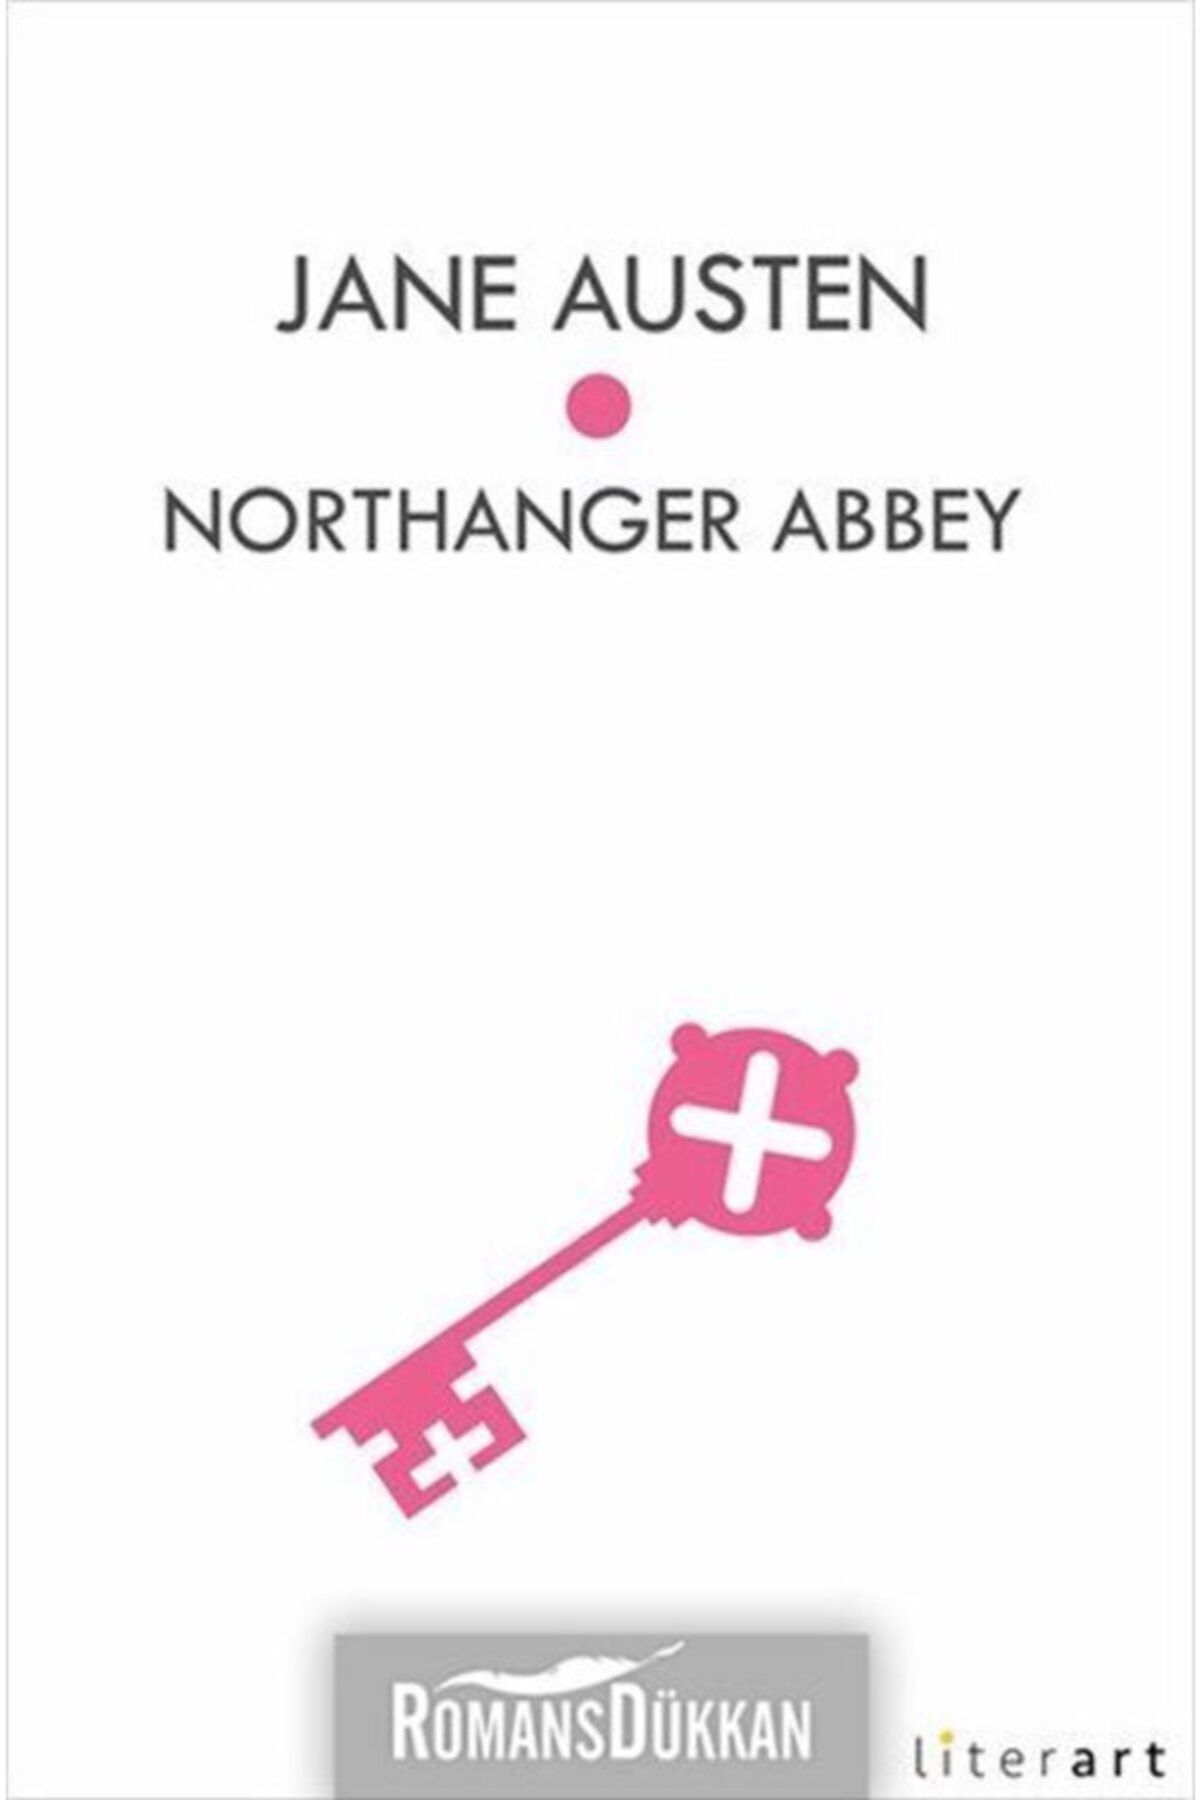 Literart Yayınları Northanger Abbey - Jane Austen - Jane Austen